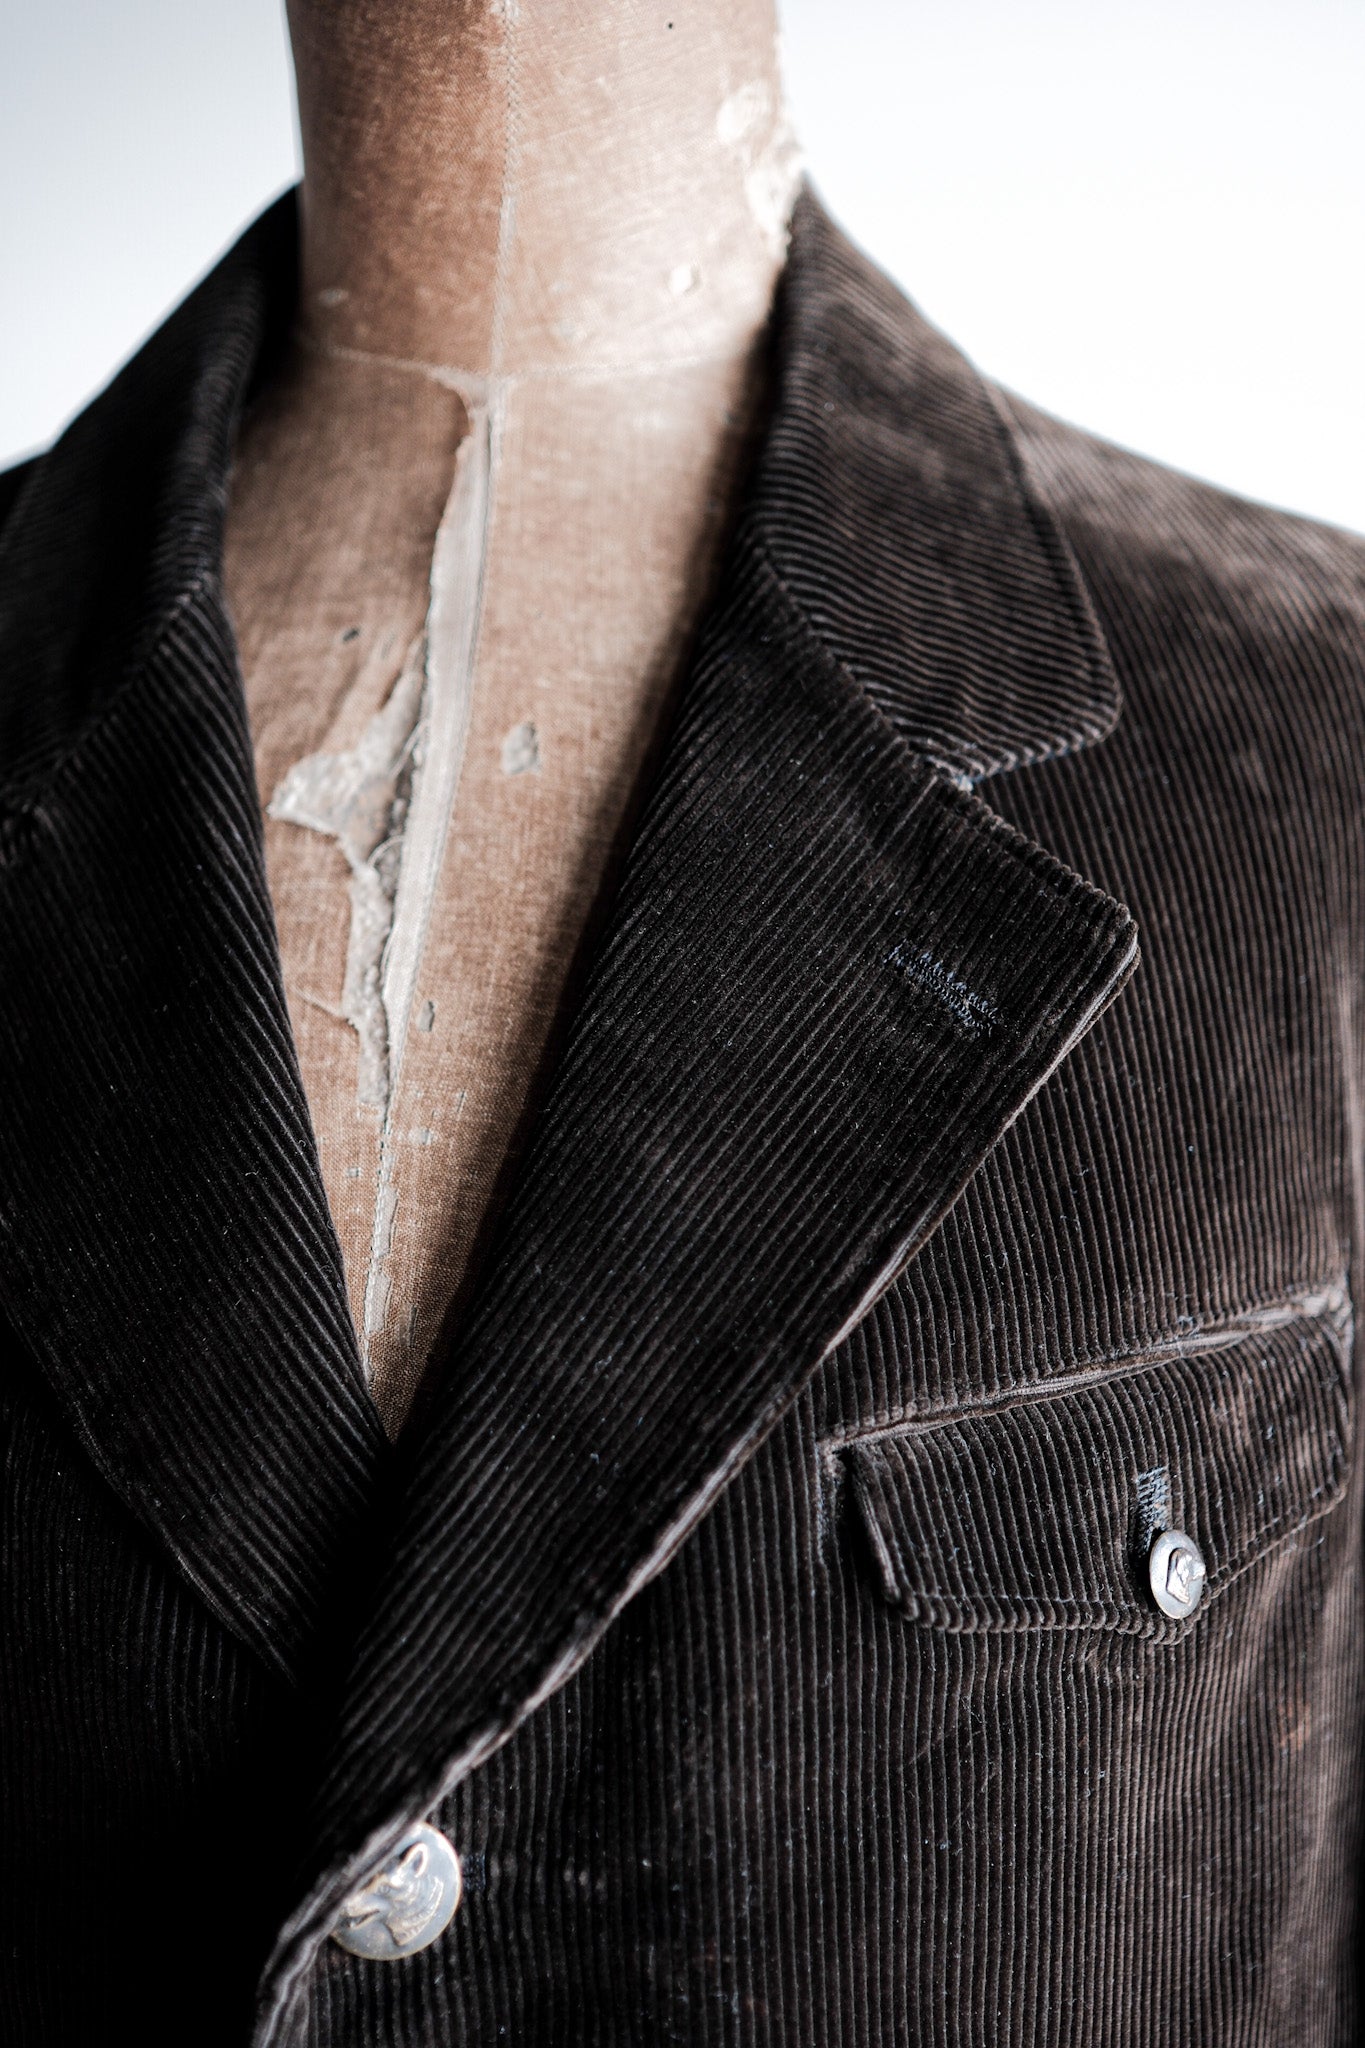 [~ 40 '] 프랑스 빈티지 다크 브라운 코듀로이 옷깃 사냥 재킷 "데드 스톡"